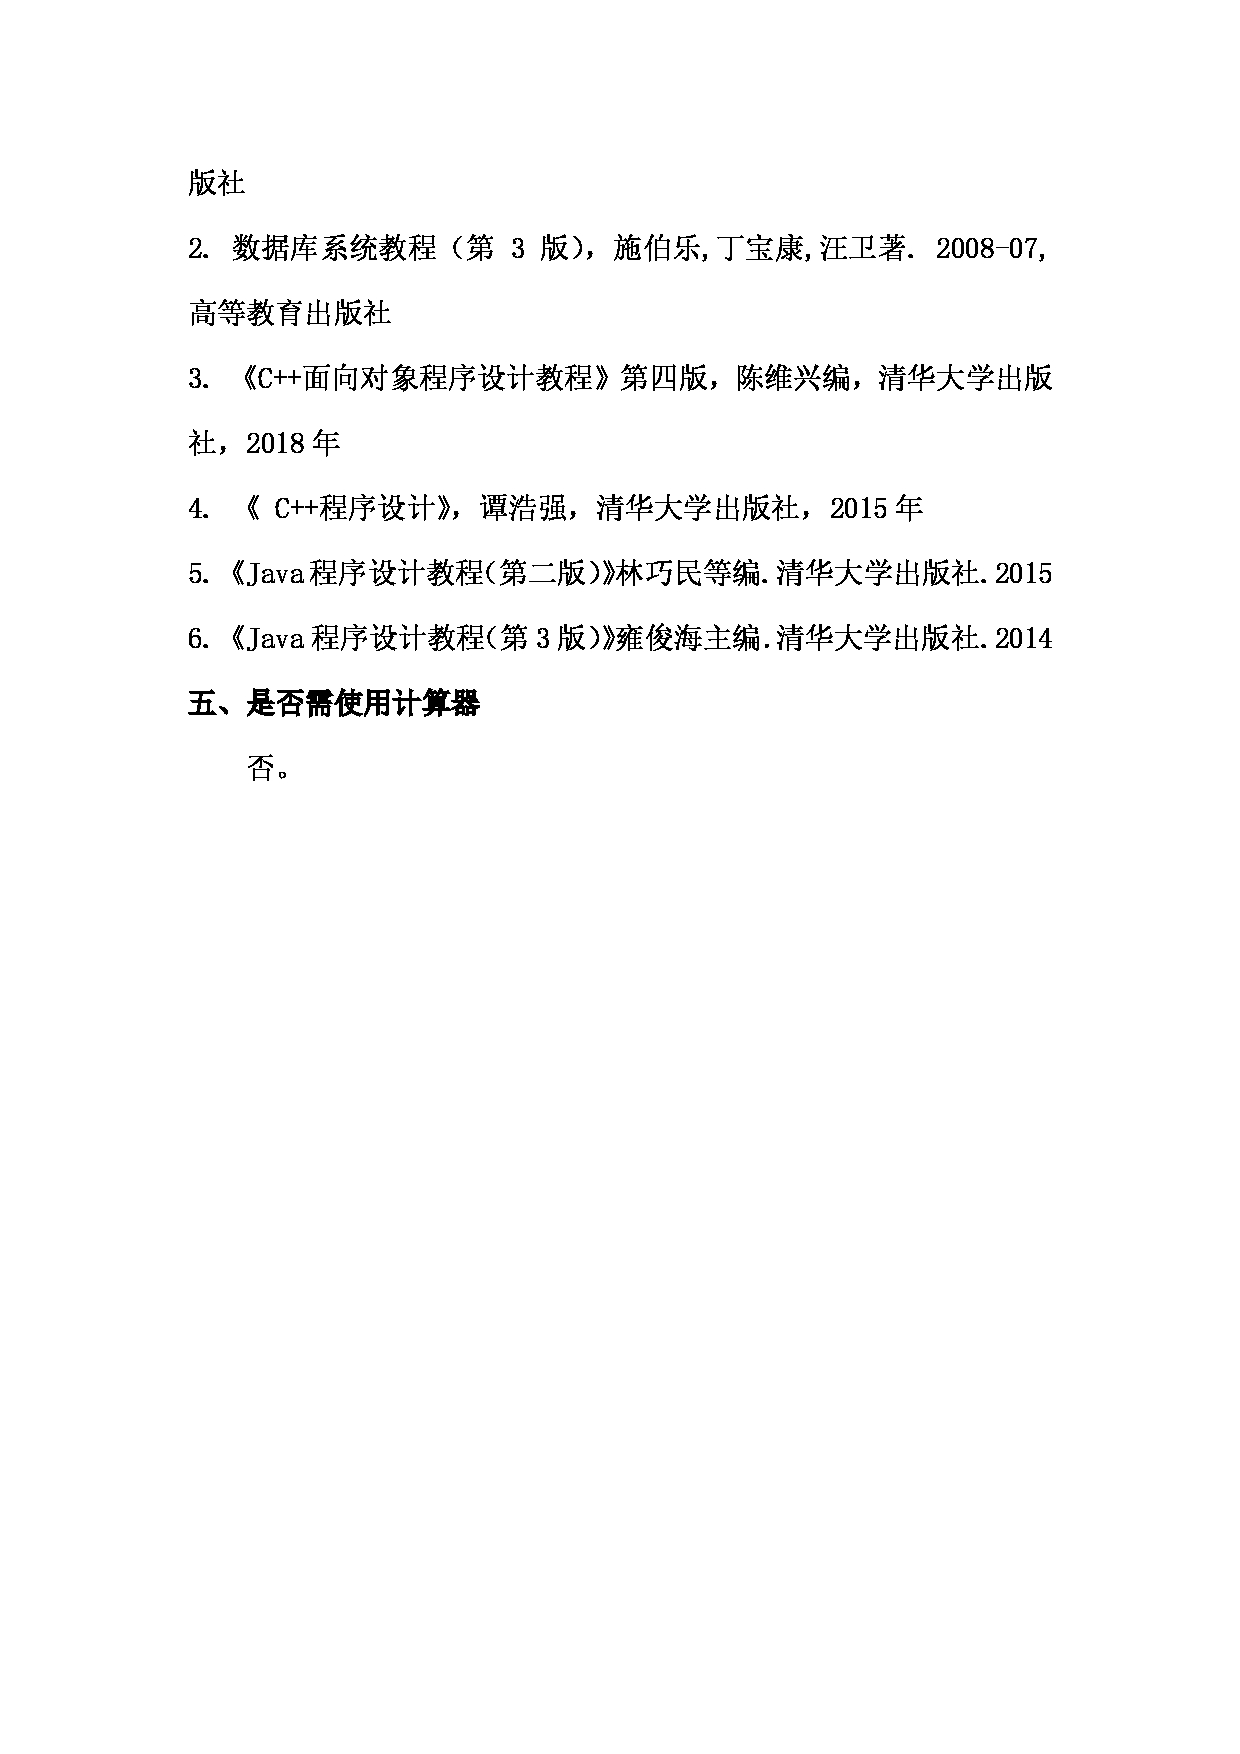 2022考研大纲：上海海洋大学2022年考研自命题科目 F21数据库原理和面向对象程序设计语言（C++或Java） 考试大纲第2页